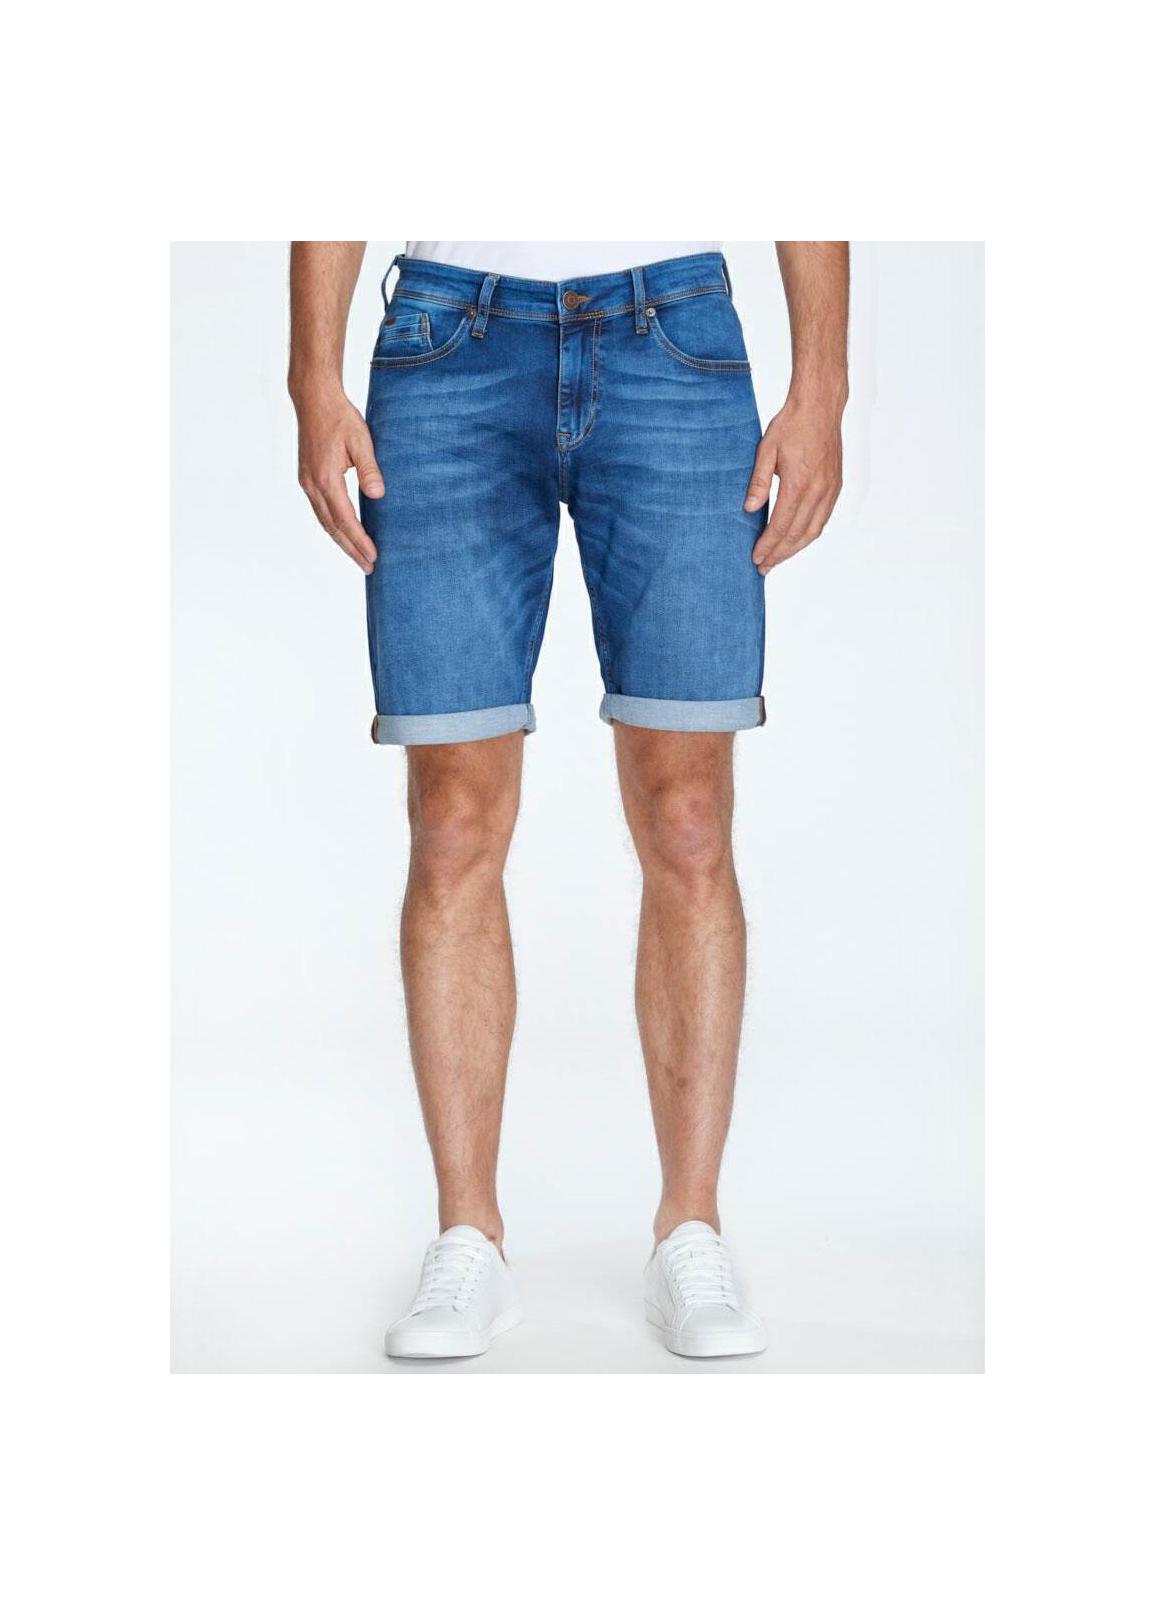 Cross Jeans® Leom Shorts - Dark Mid Blue (076)